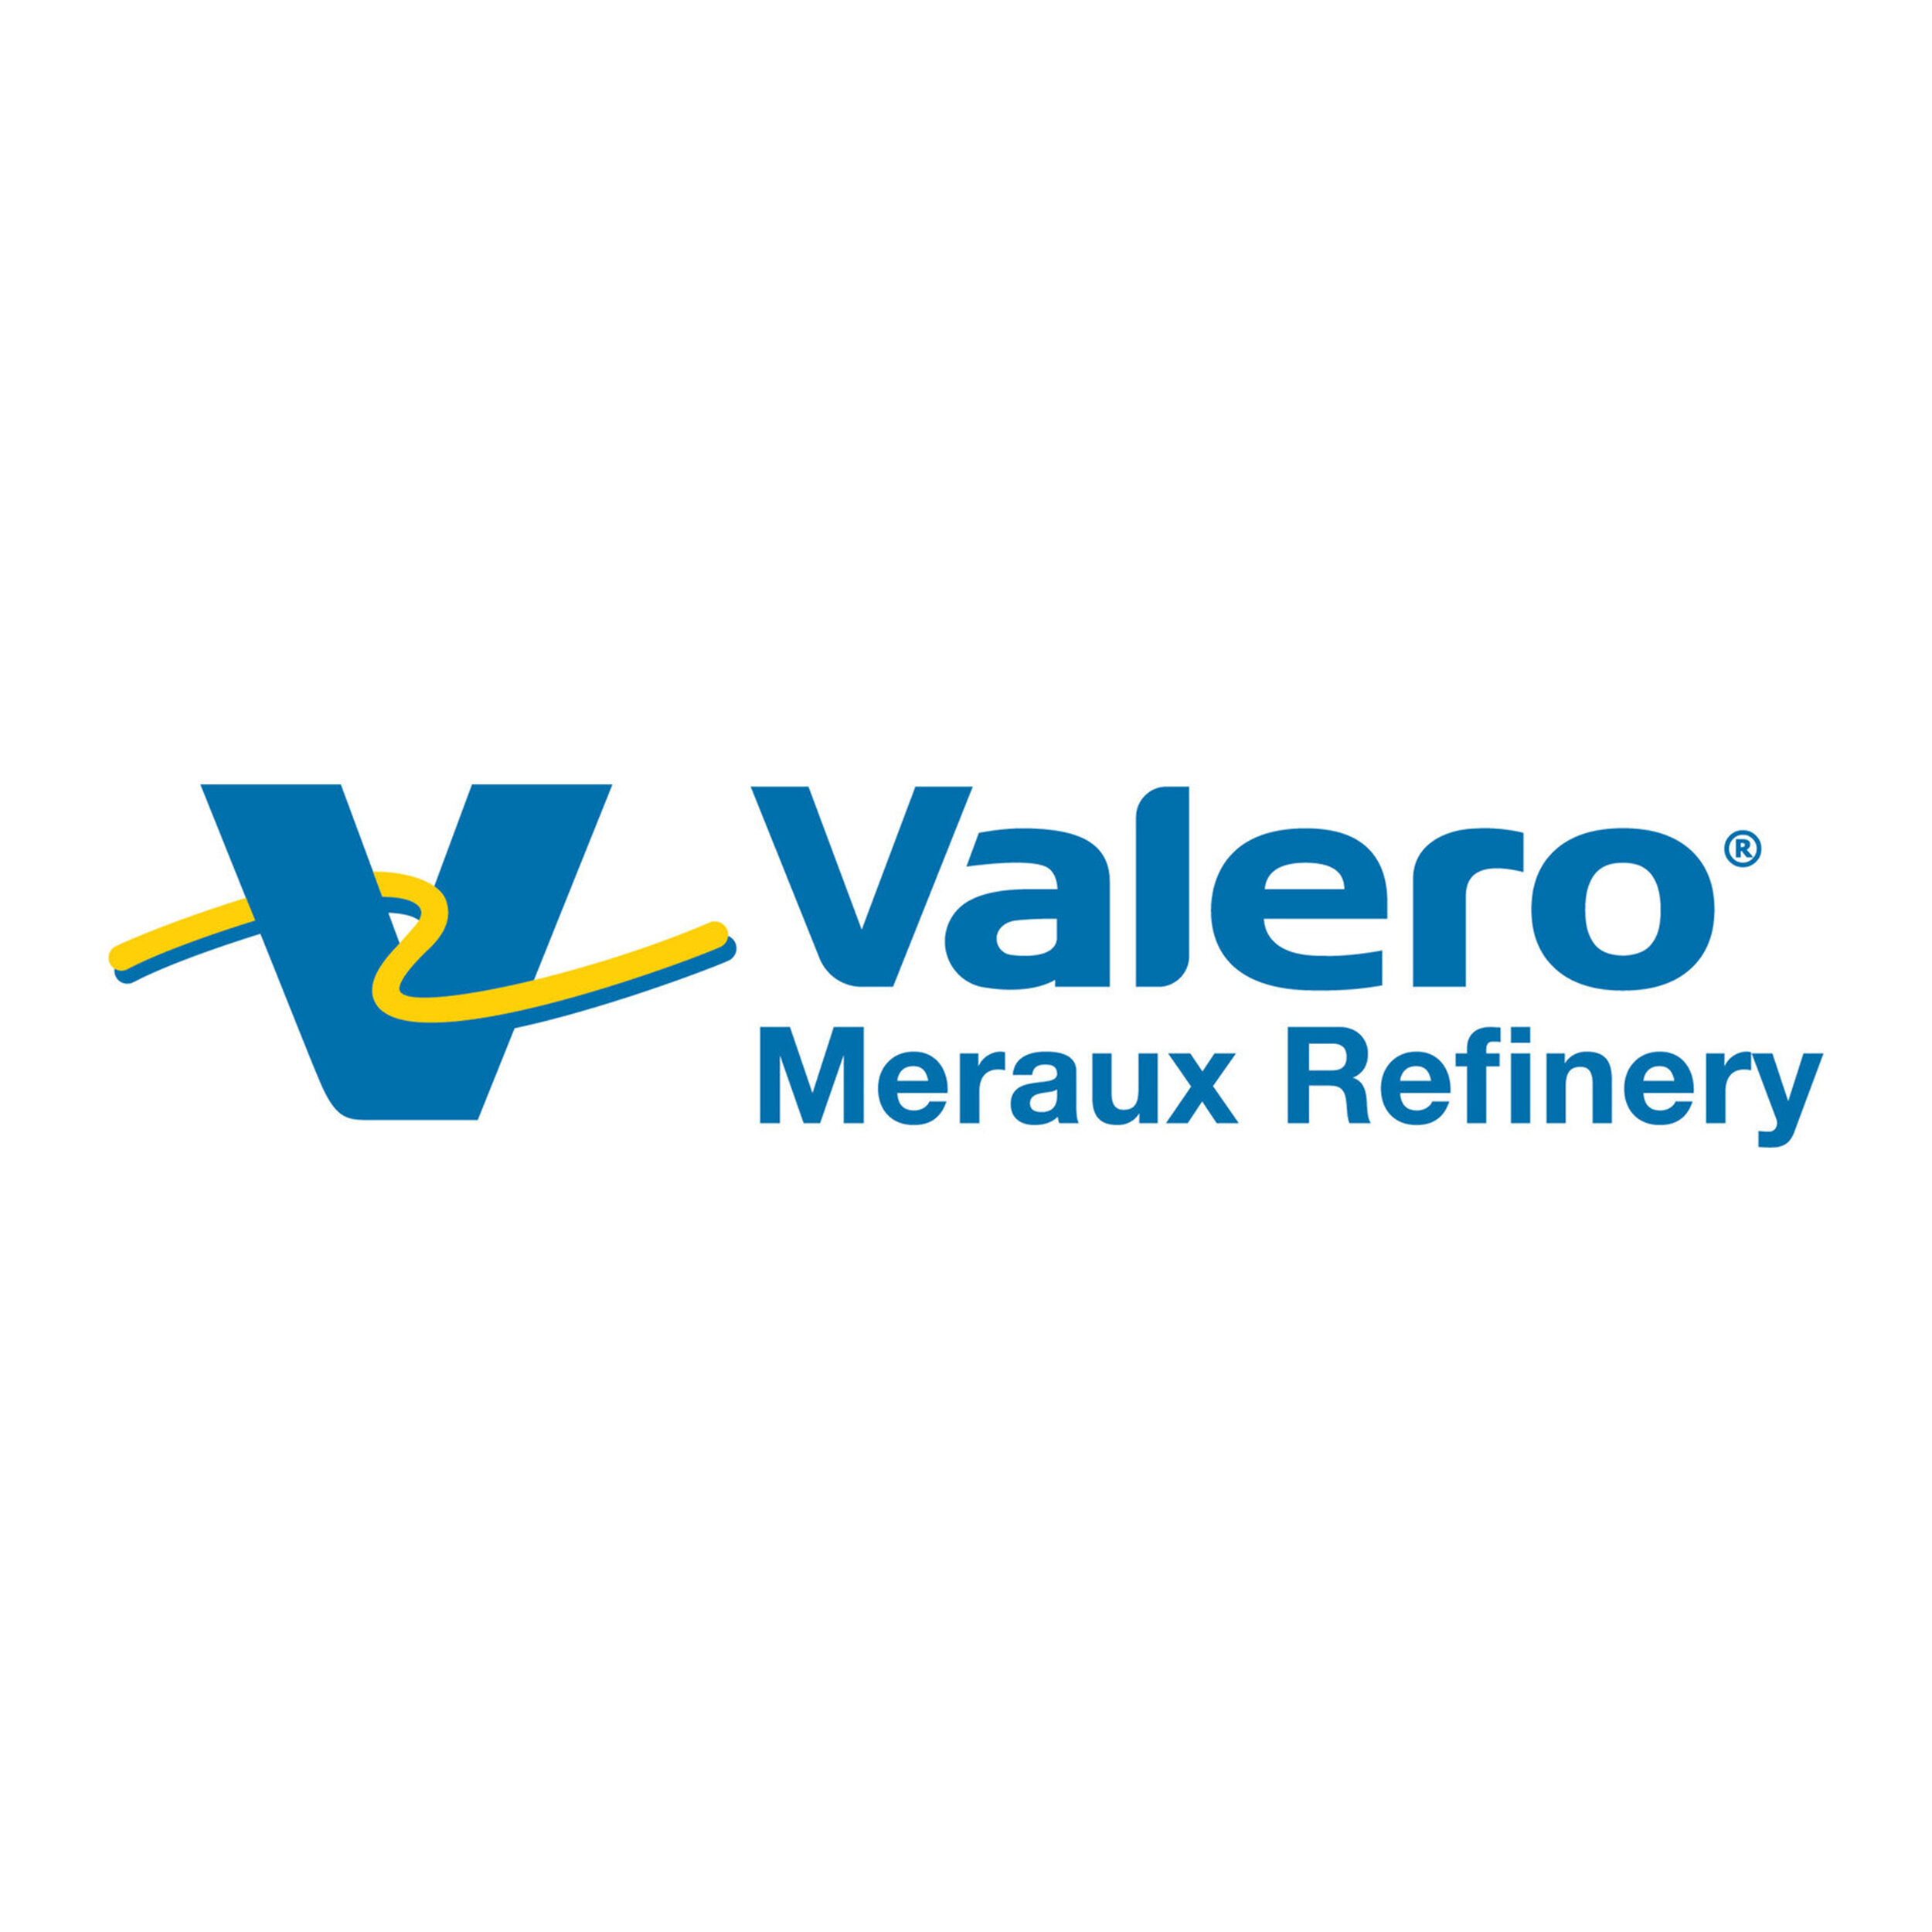 Valero Meraux Refinery